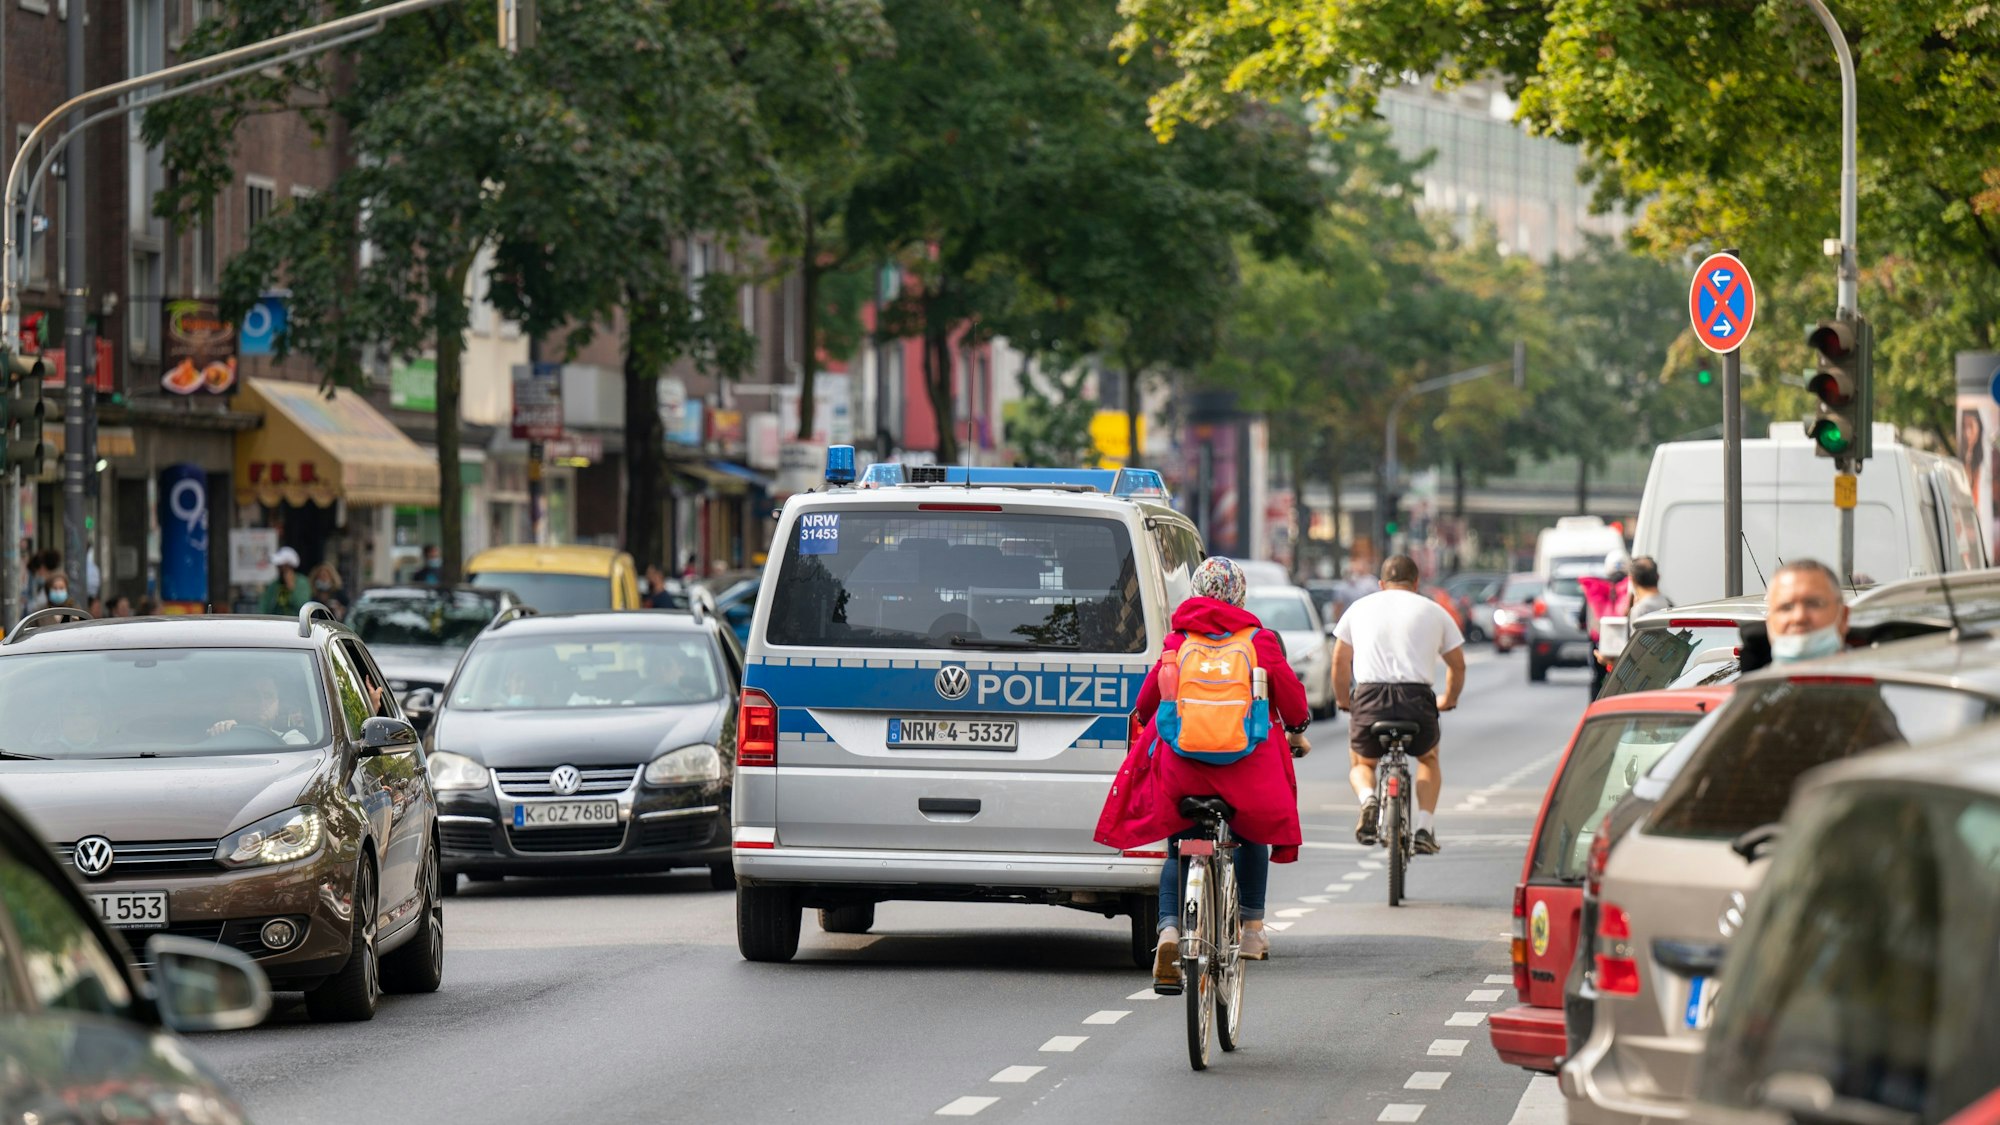 Polizeiauto und Radfahrerbauf der Kalker Hauptstraße.